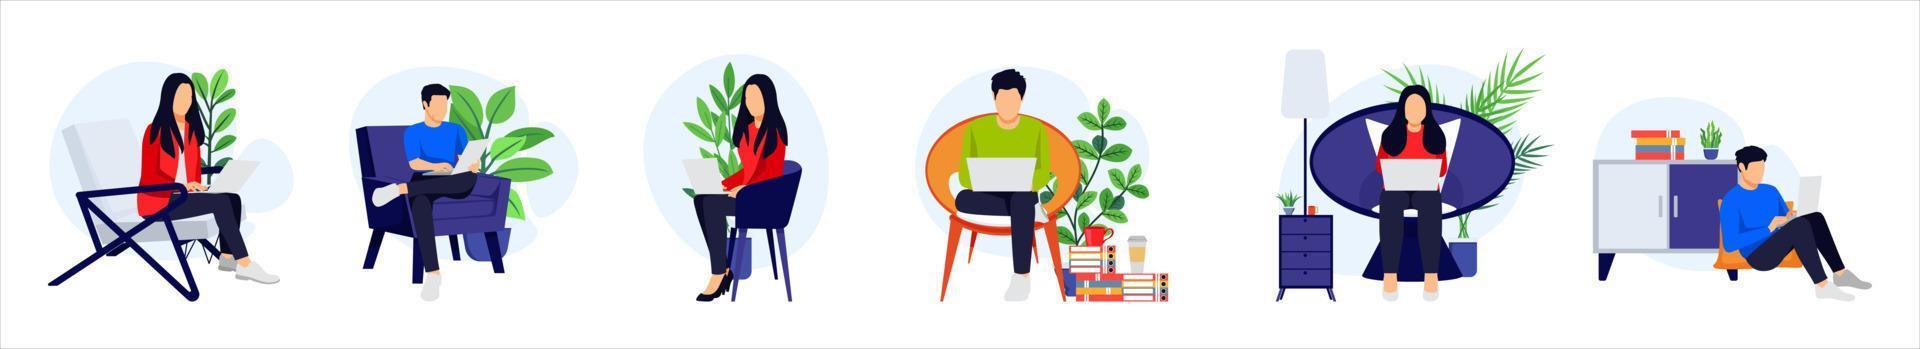 freiberufler zeichensatz männlich und weiblich sitzen auf sofa sessel und arbeiten auf laptop mit zimmerpflanze isoliert vektor